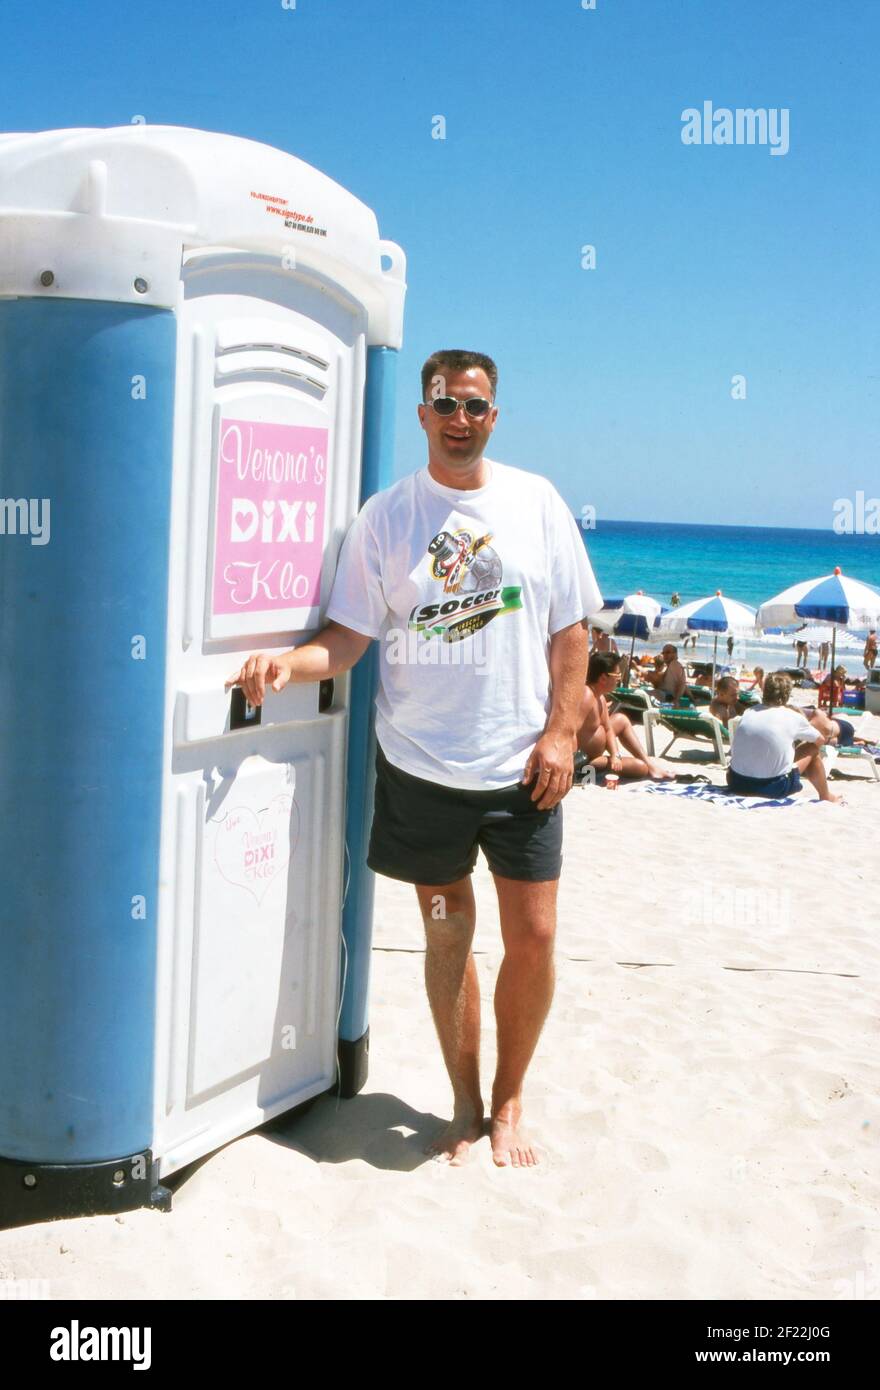 Touristen bezahlen für die Nutzung vom Dixi Klo vom Auftirtt von Verona Feldbusch bei 'Big Brother' als Touristenattraktion am Strand von Mallorca, Spanien 2000. Stock Photo